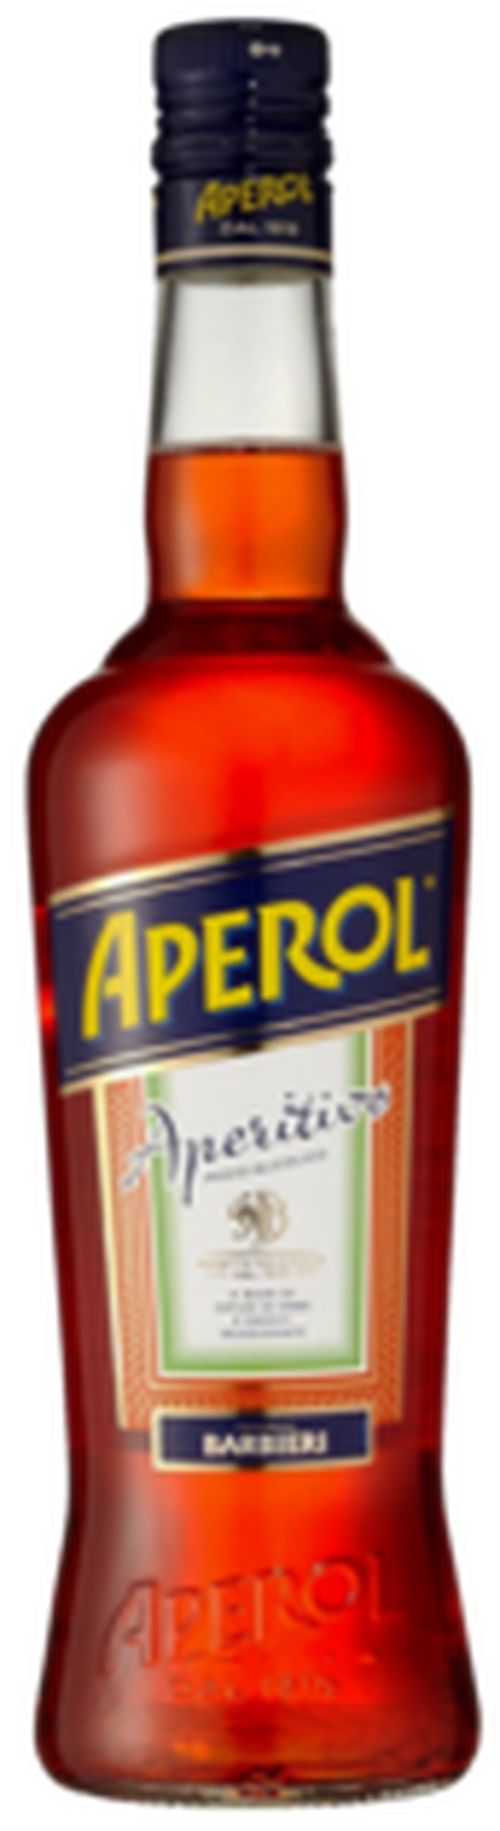 Aperol 11% 0,7L